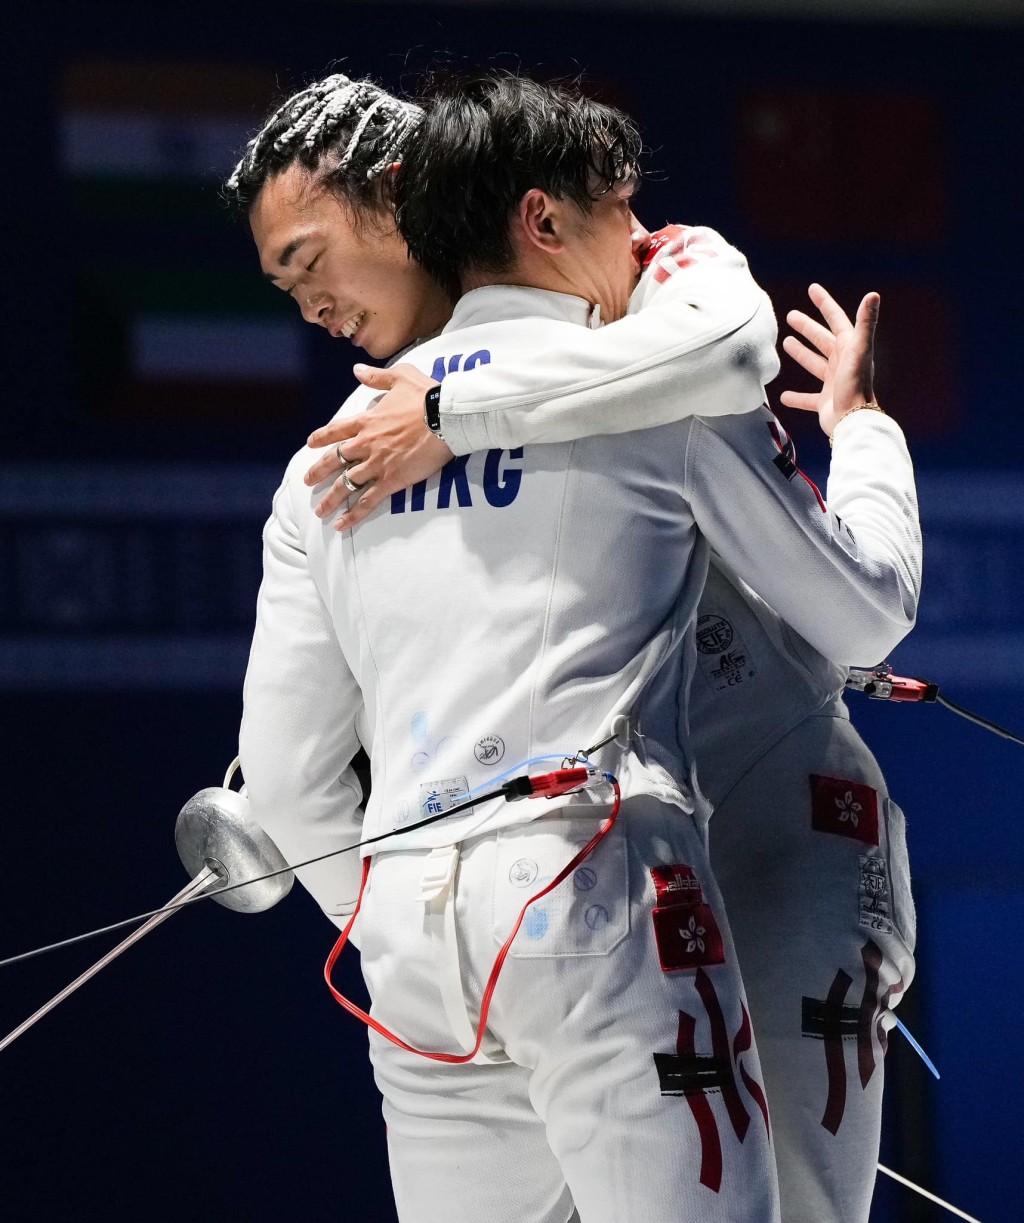 歷史性的一刻: 2位男重代表在賽後怎少得這識英雄重英雄的抱抱呢? FIE FB 圖